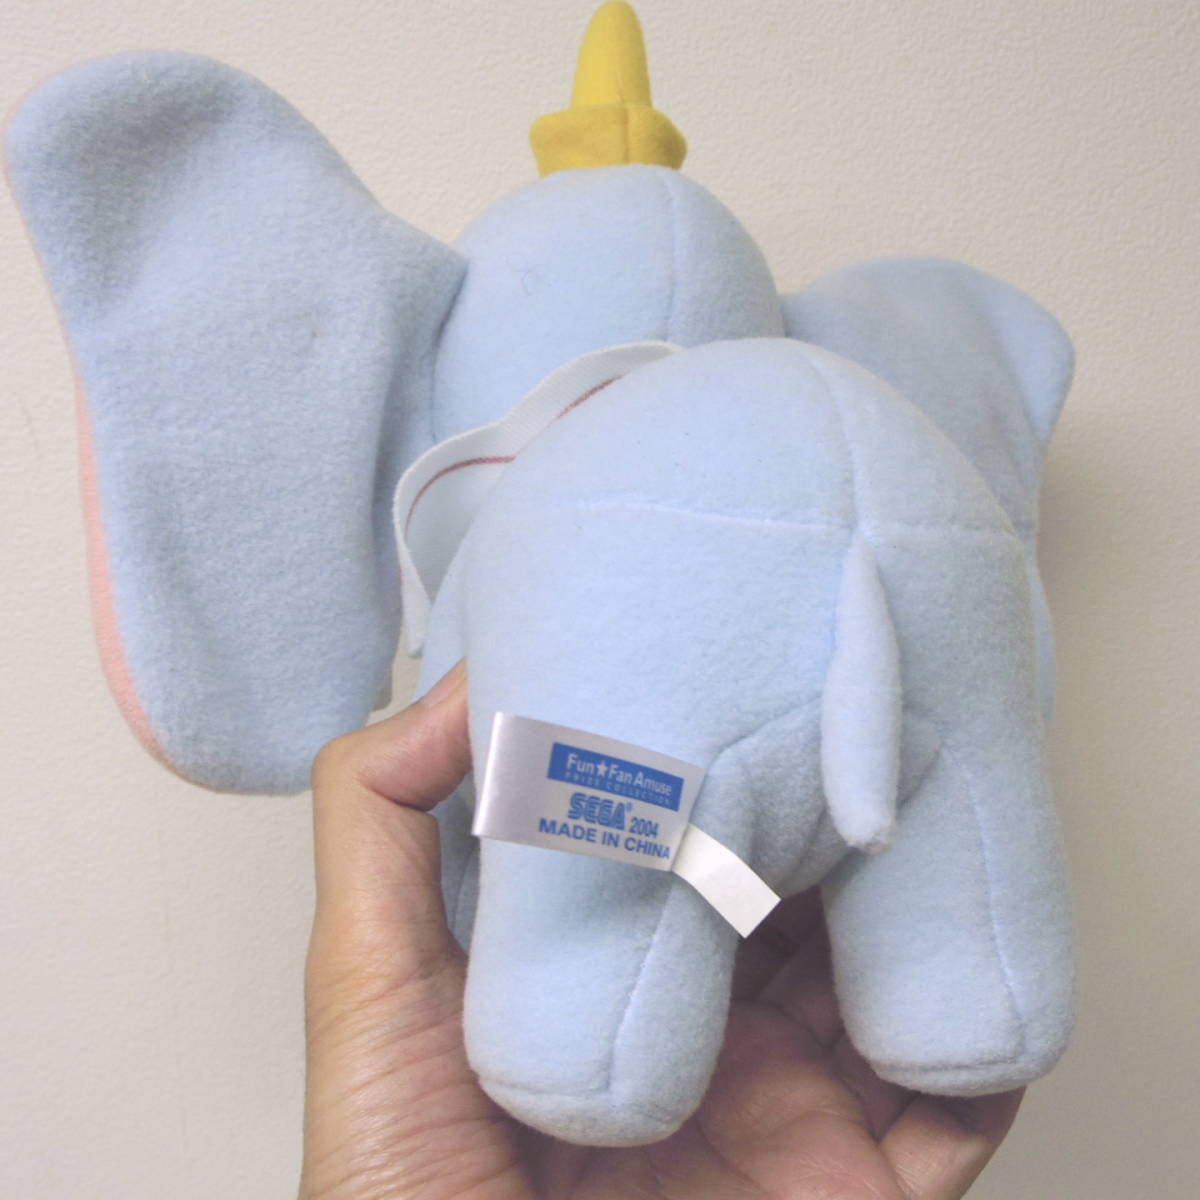  Dumbo soft toy Disney Disney